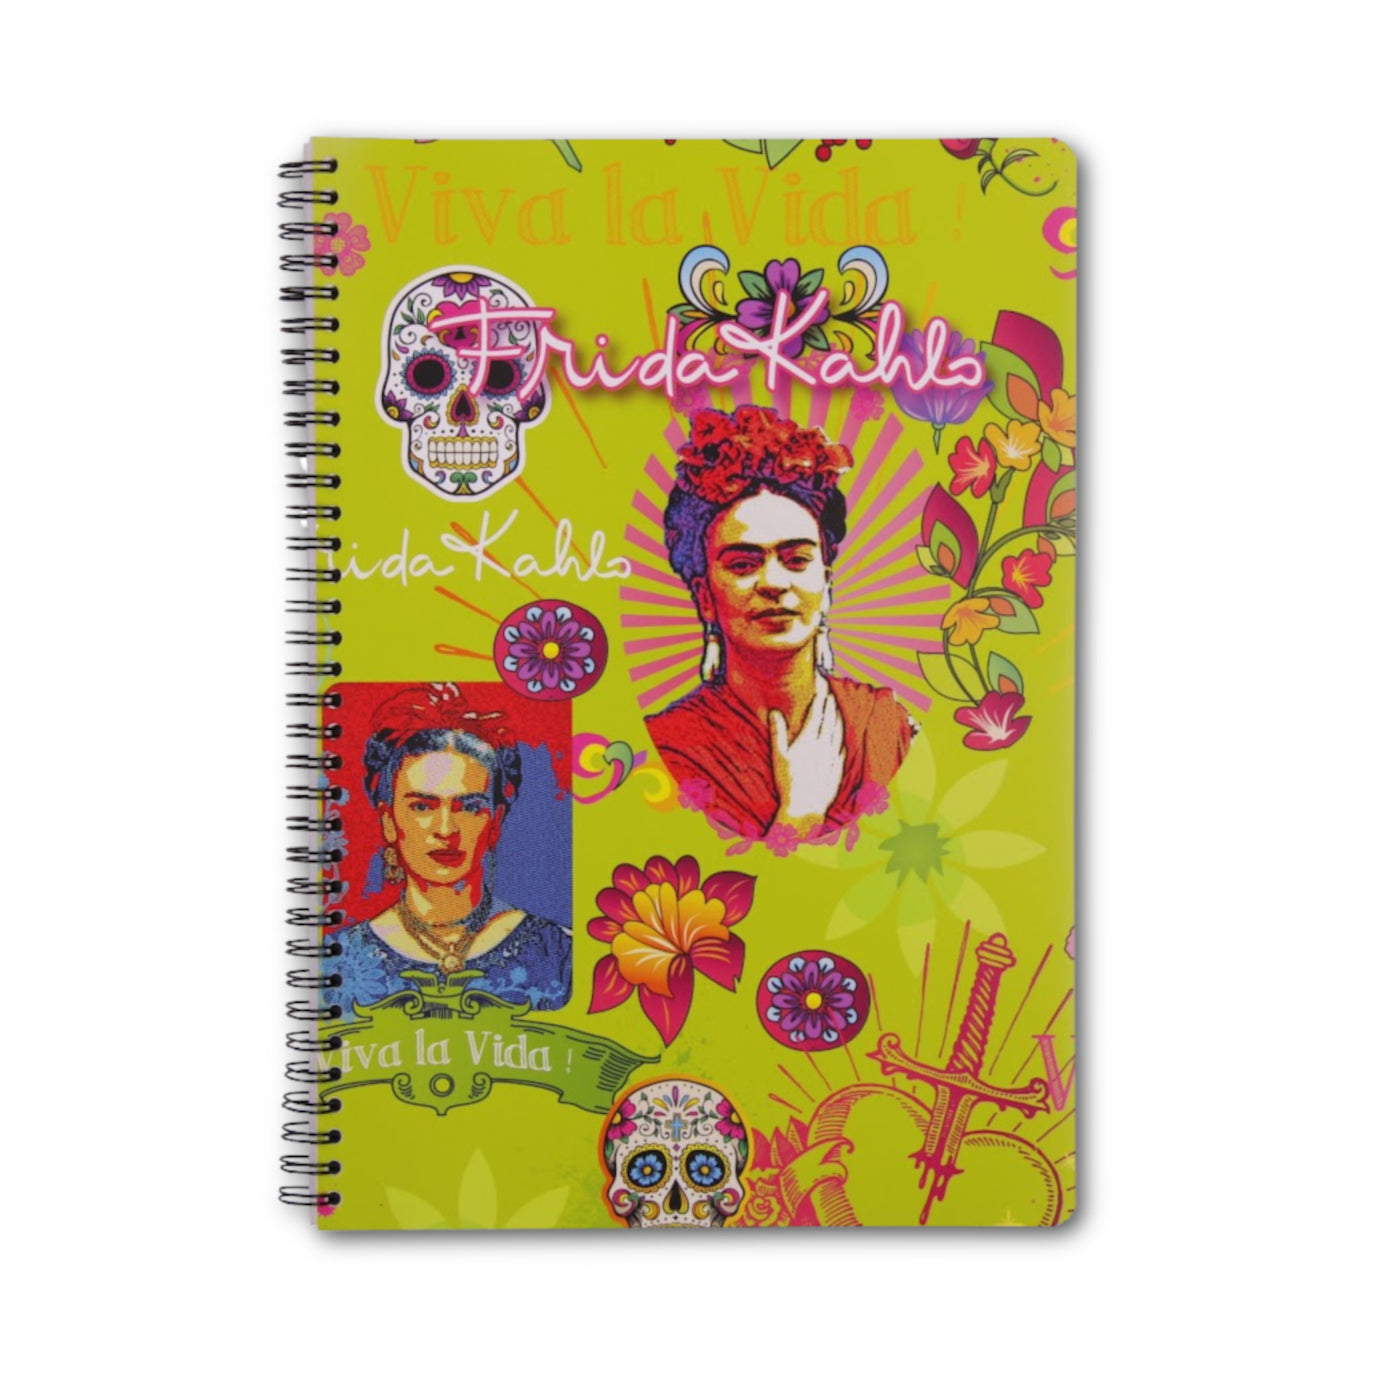 Clairefontaine Frida Kahlo Notebooks